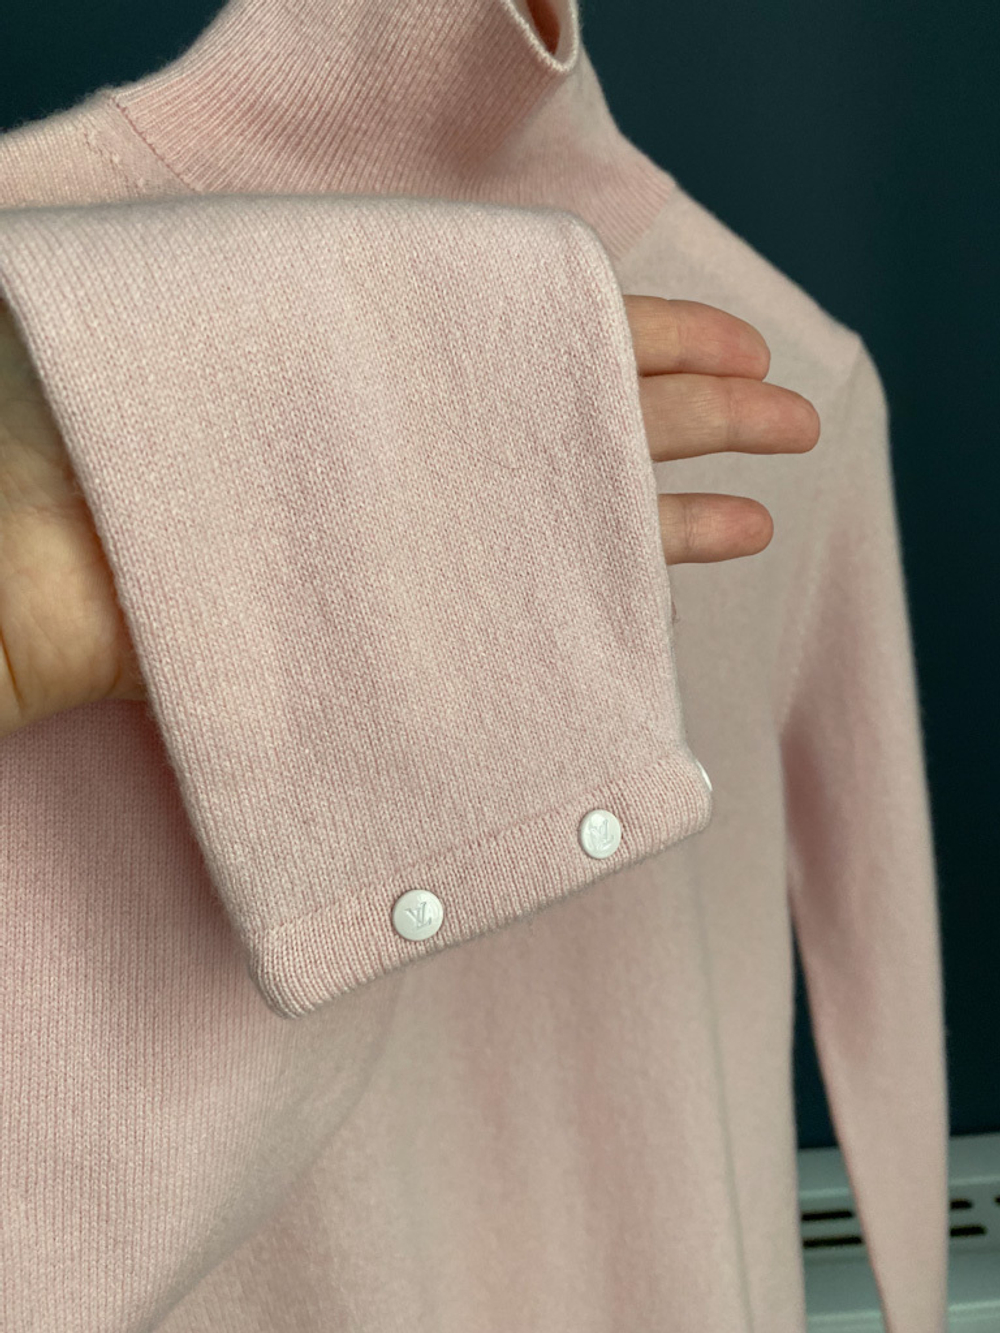 Новый свитер кашемировый  Louis Vuitton, S/М